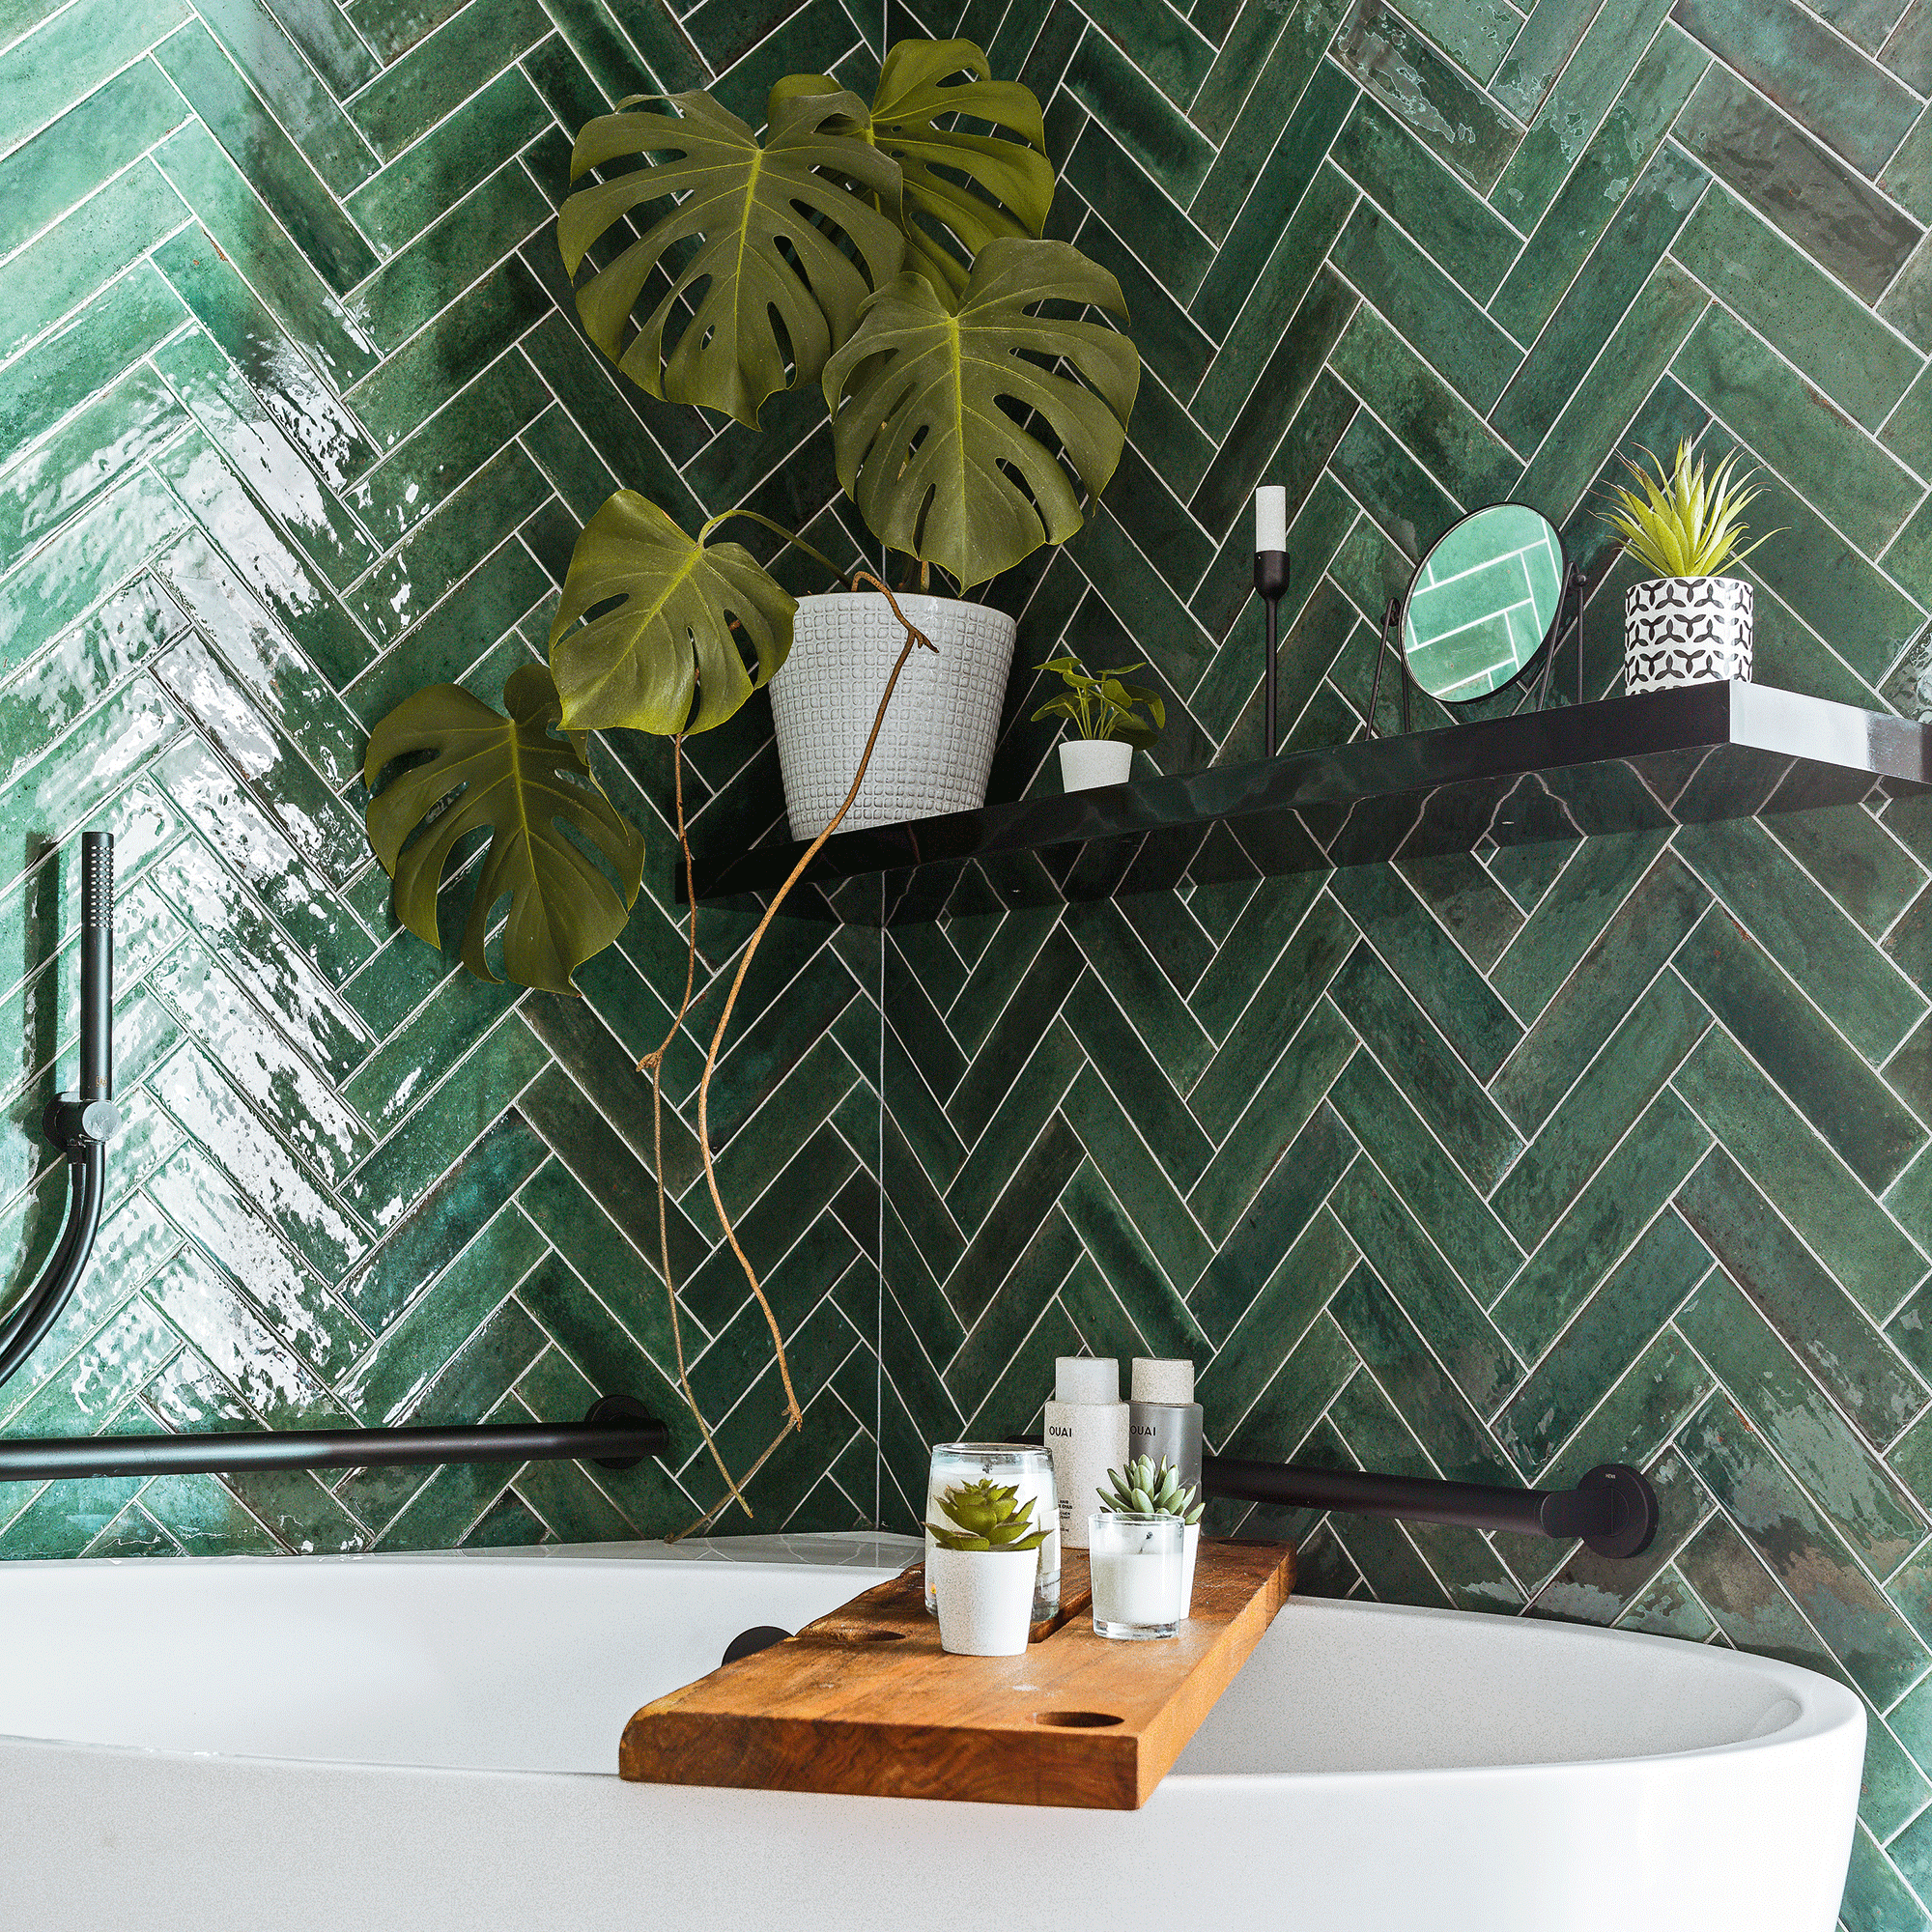 Bắt trend trang trí phòng tắm gia đình với gạch ốp màu xanh lá - Ảnh 2.